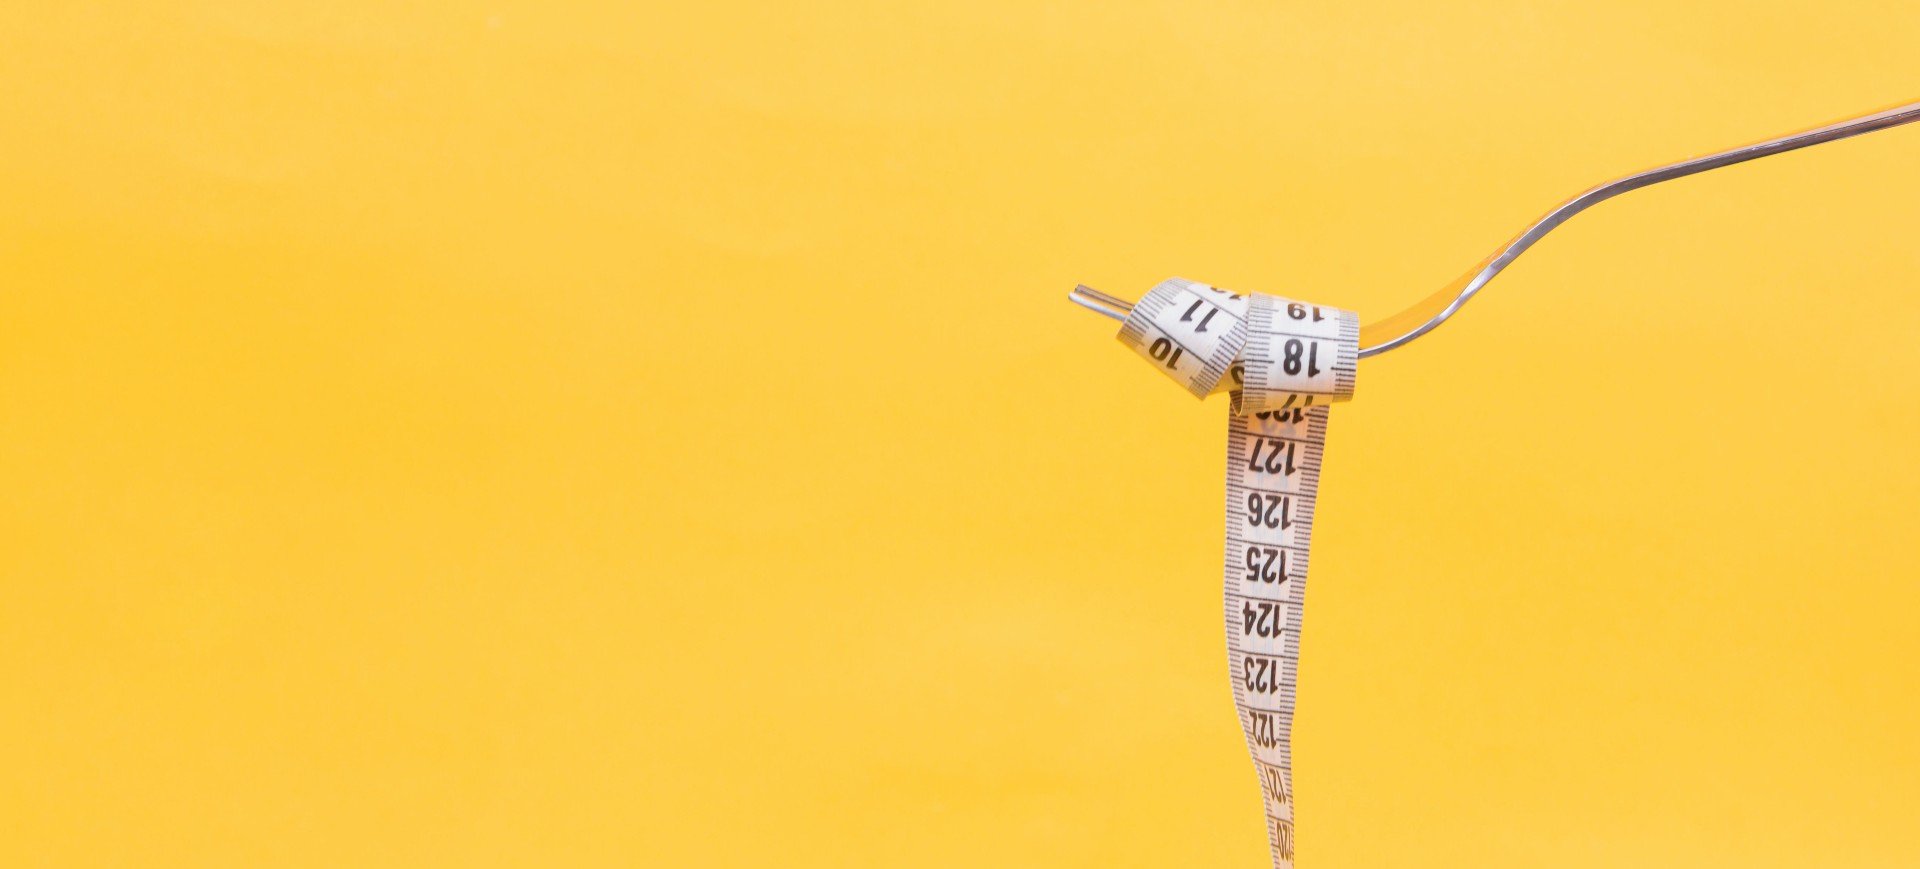 Uma fita métrica enrolada em um garfo, como um macarrão, em uma imagem de fundo amarelo; imagem ilustra transtorno alimentar